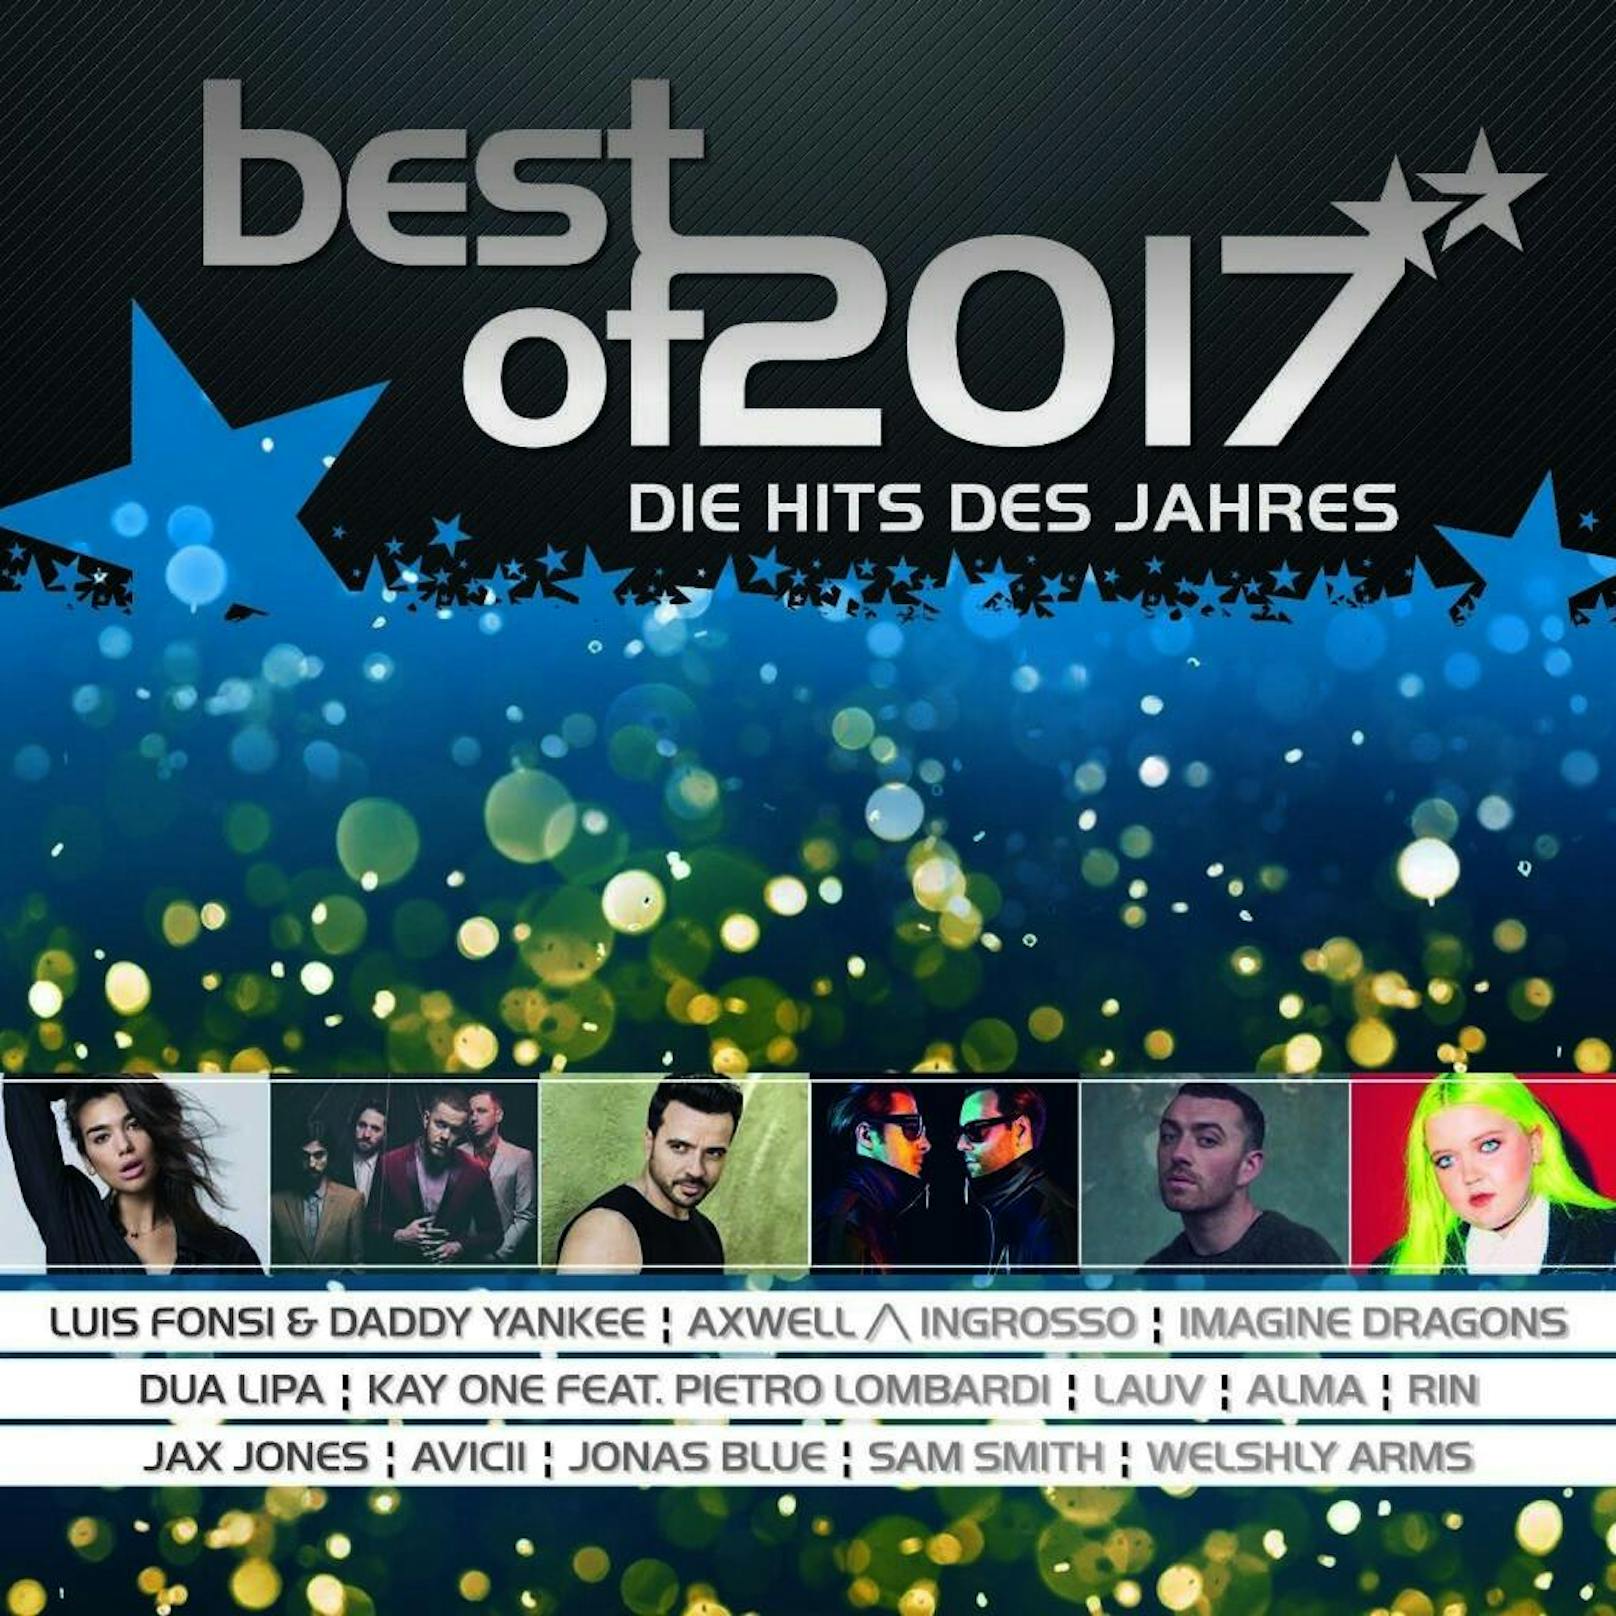 Best Of 2017 - "Die Hits des Jahres"